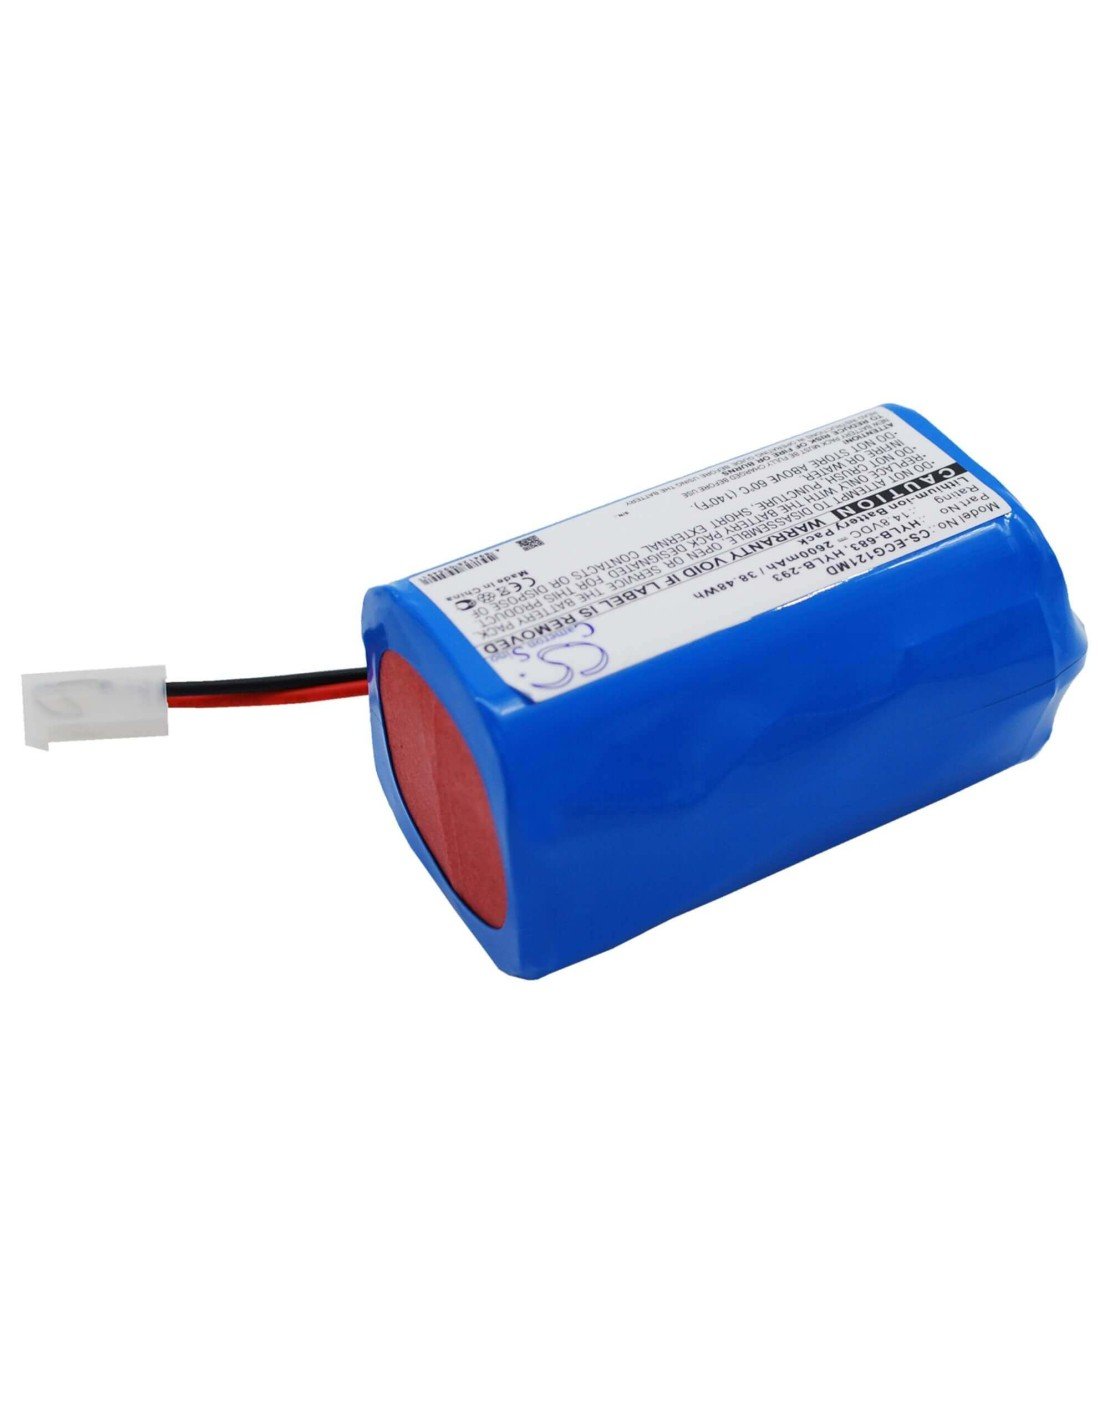 Battery for Biocare Ecg-1200, Ecg-1210 14.8V, 2600mAh - 38.48Wh